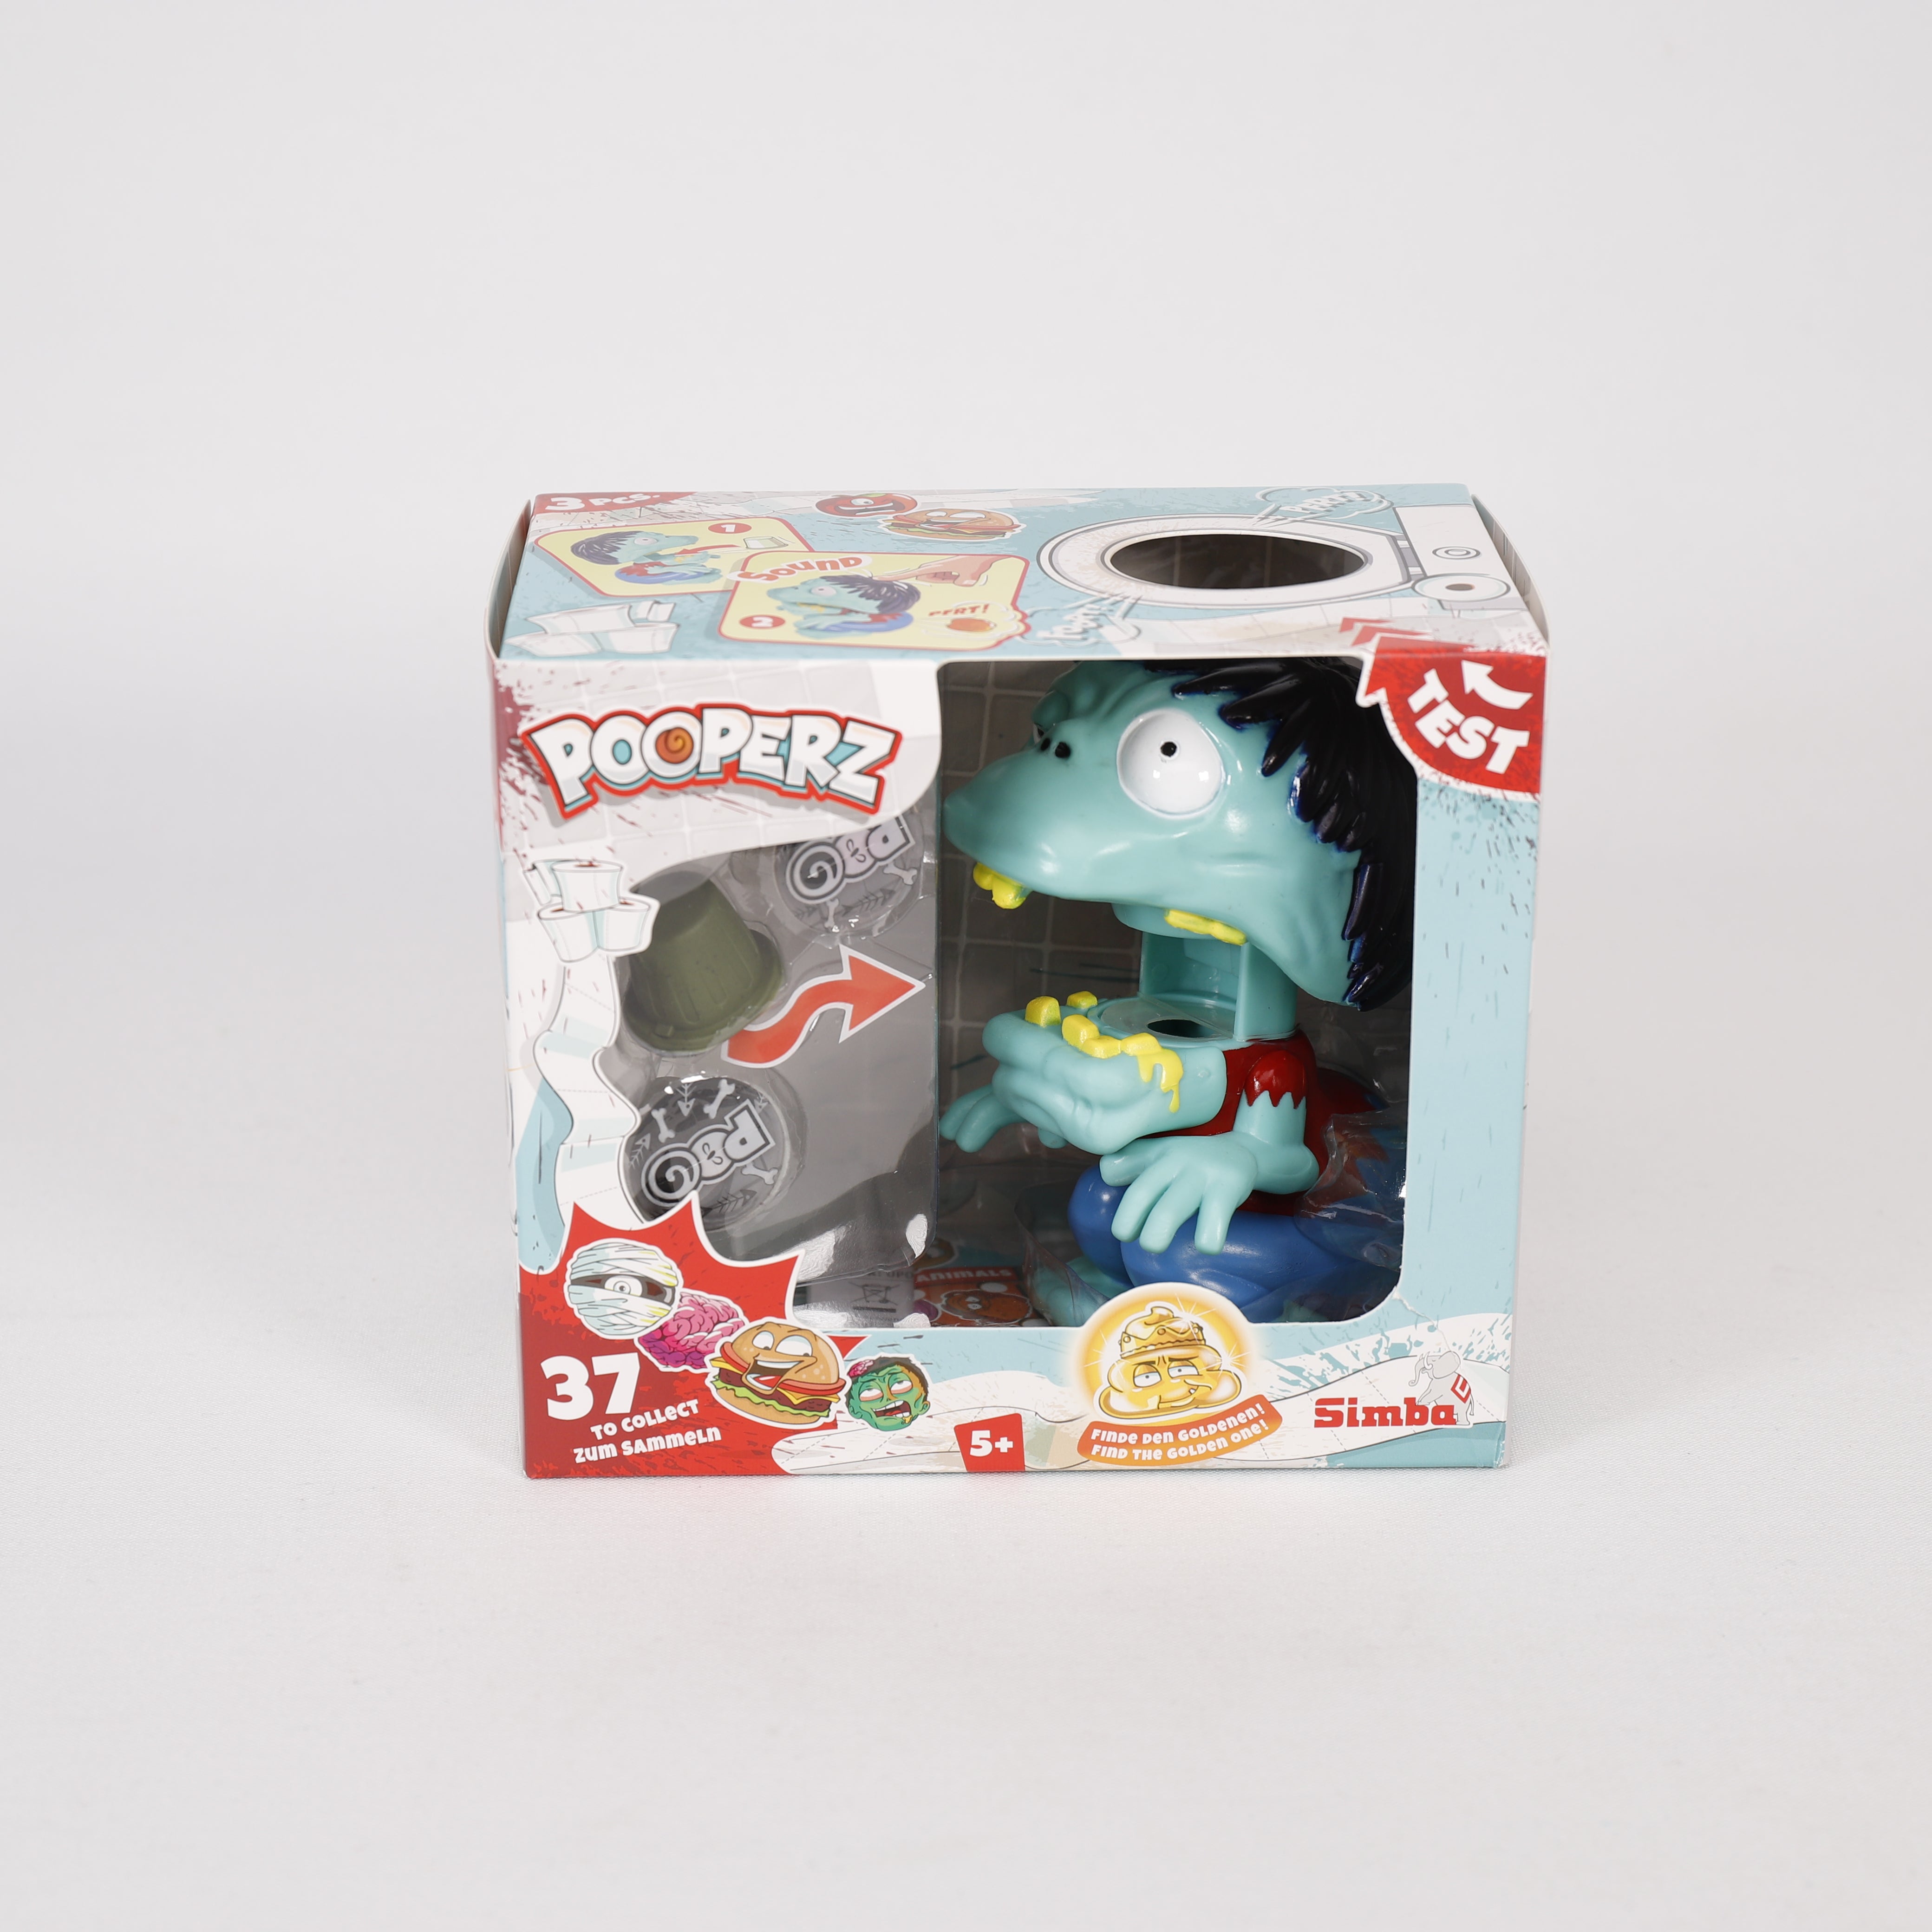 Pooperz Spielfigur 13 x15 cm mit Sound & Zubehör, Furz-Monster, Zombie, Simba.